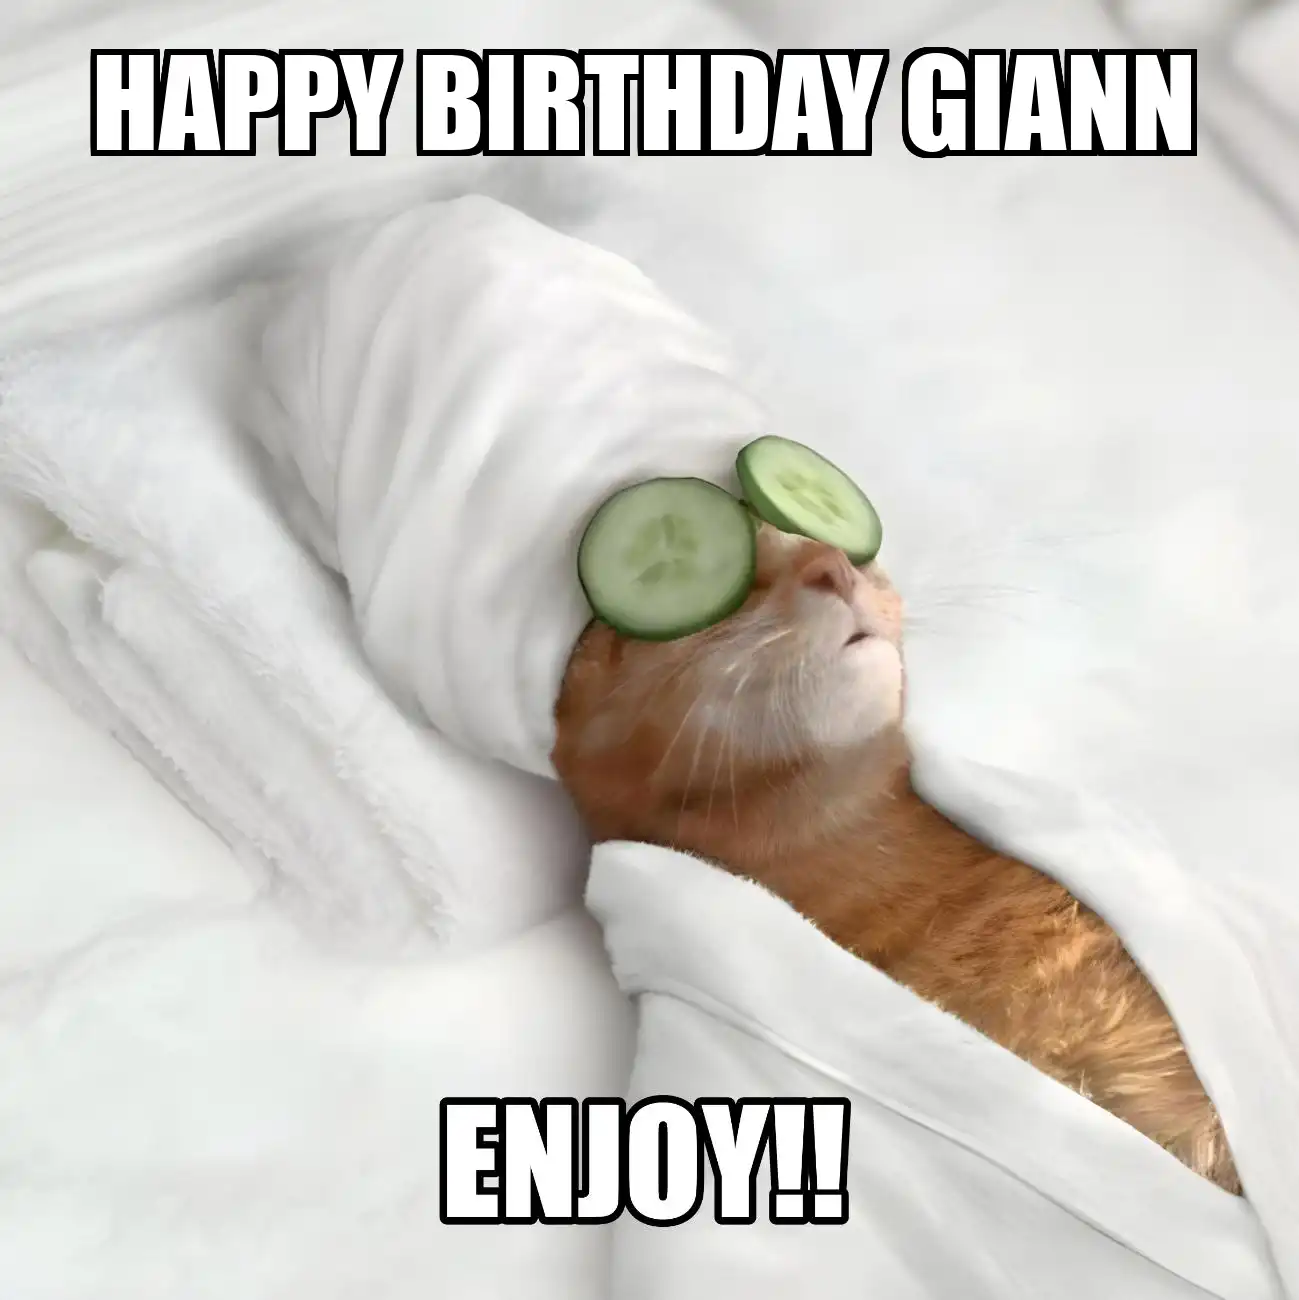 Happy Birthday Giann Enjoy Cat Meme